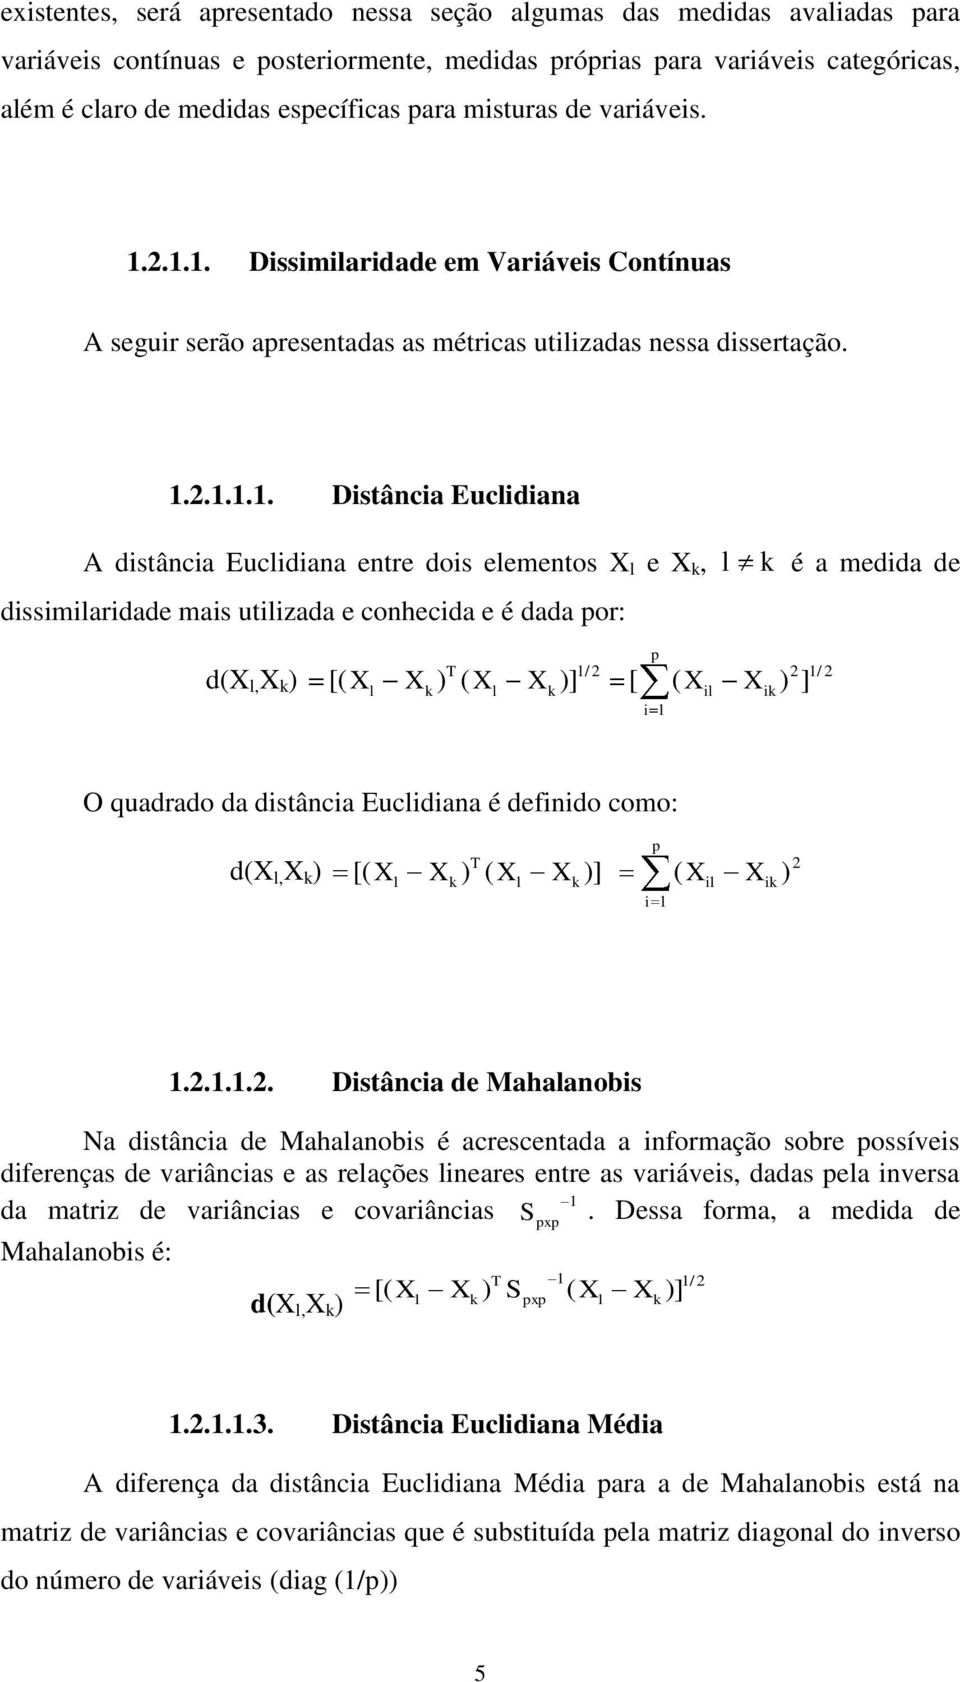 2.1.1. Dissimilaridade em Variáveis Contínuas A seguir serão apresentadas as métricas utilizadas nessa dissertação. 1.2.1.1.1. Distância Euclidiana A distância Euclidiana entre dois elementos X l e X